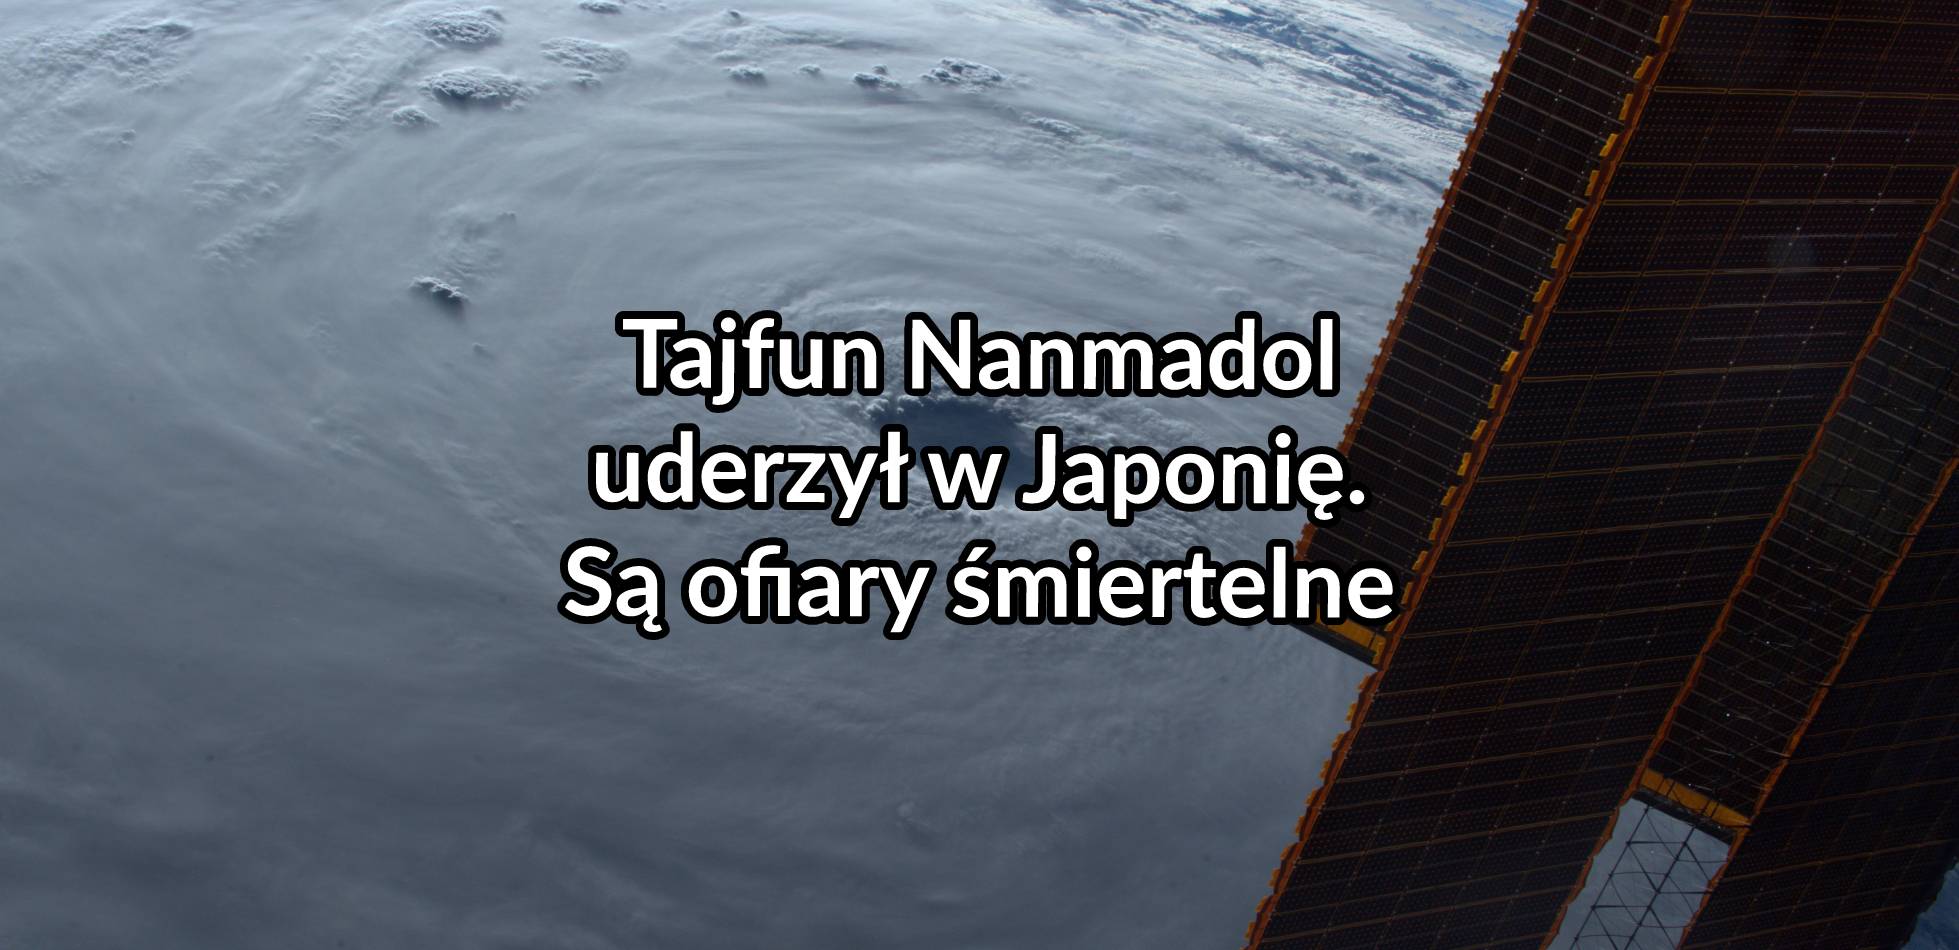 Tajfun Nanmadol uderzył w Japonię. Są ofiary śmiertelne